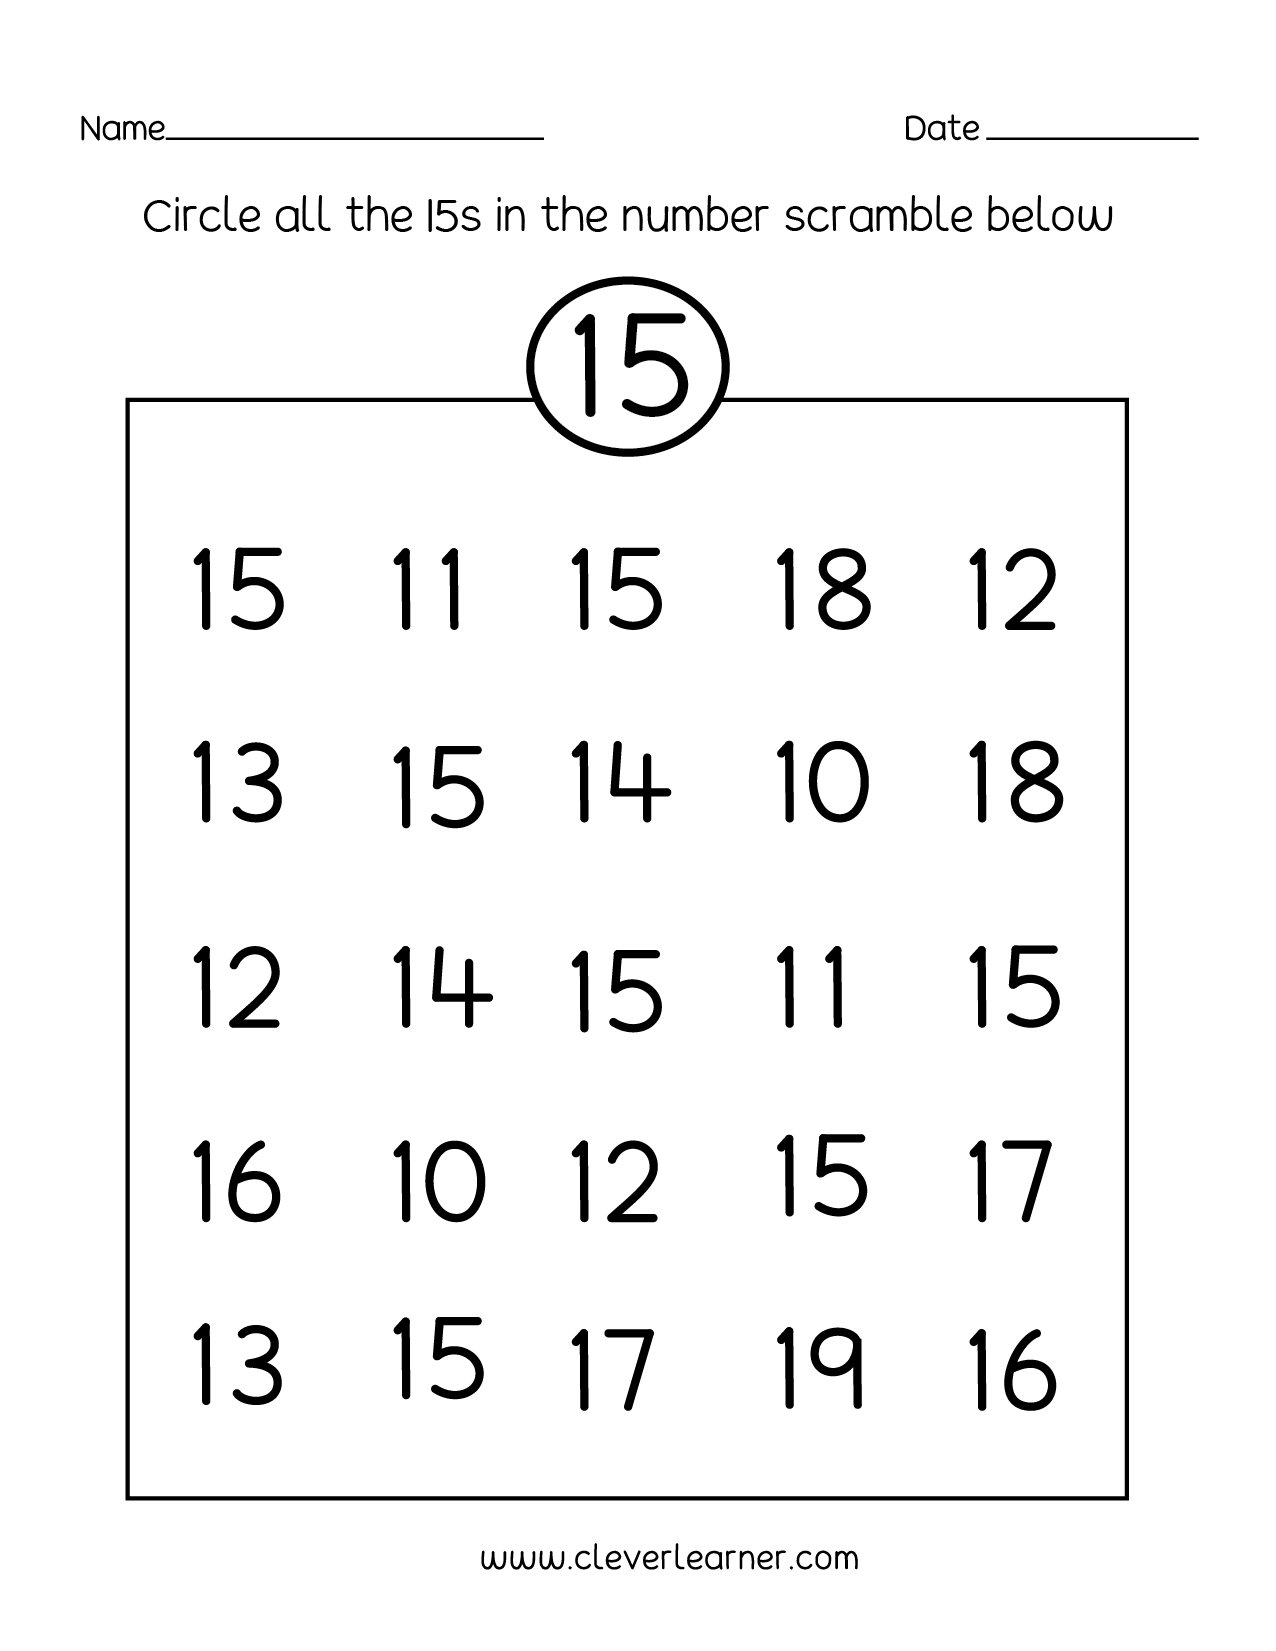 Preschool Numbers Counting To 15 Worksheet